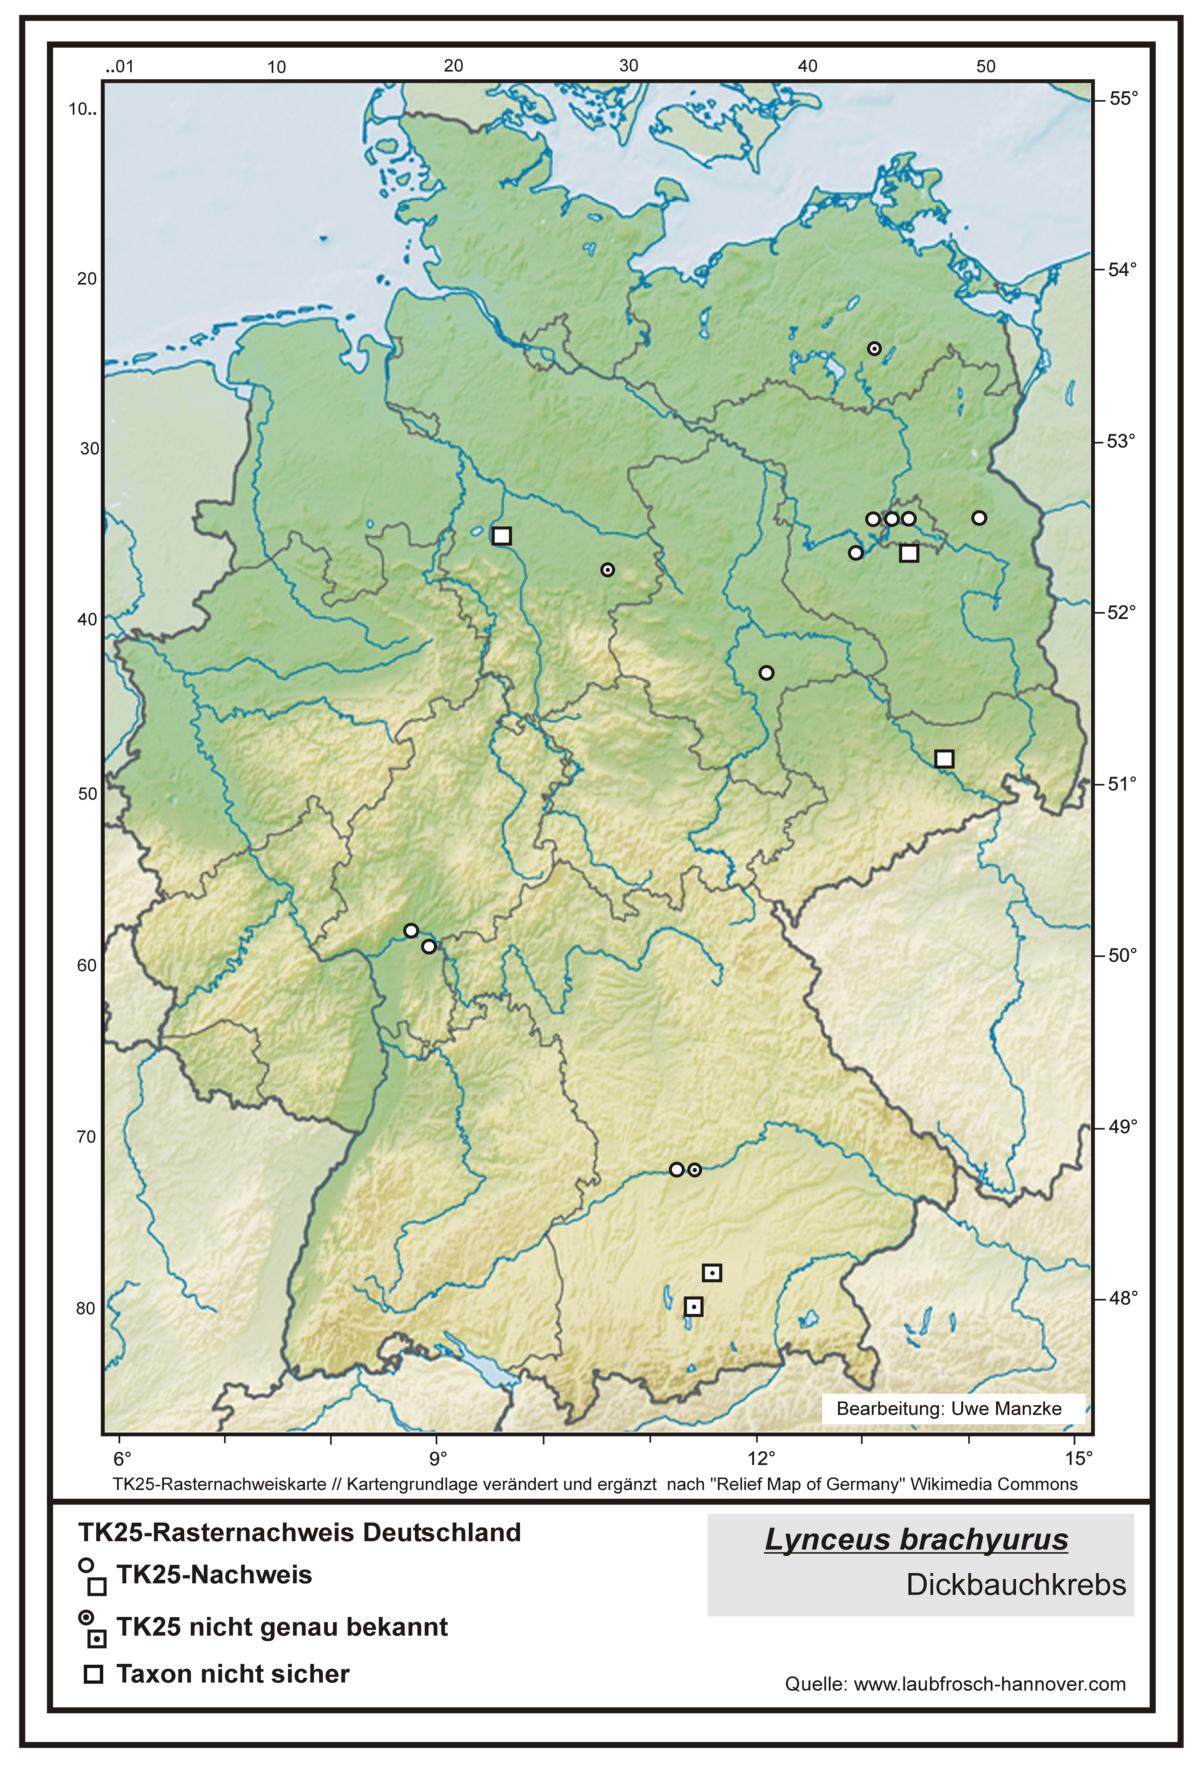 Lynceus brachyurus TK25-Rasternachweiskarte Deutschland, Bearbeitung Uwe Manzke; Kartengrundlage: verändert n. Relief Map of Germany Wikimedia Commons https://commons.wikimedia.org/wiki/File:Relief_Map_of_Germany.svg